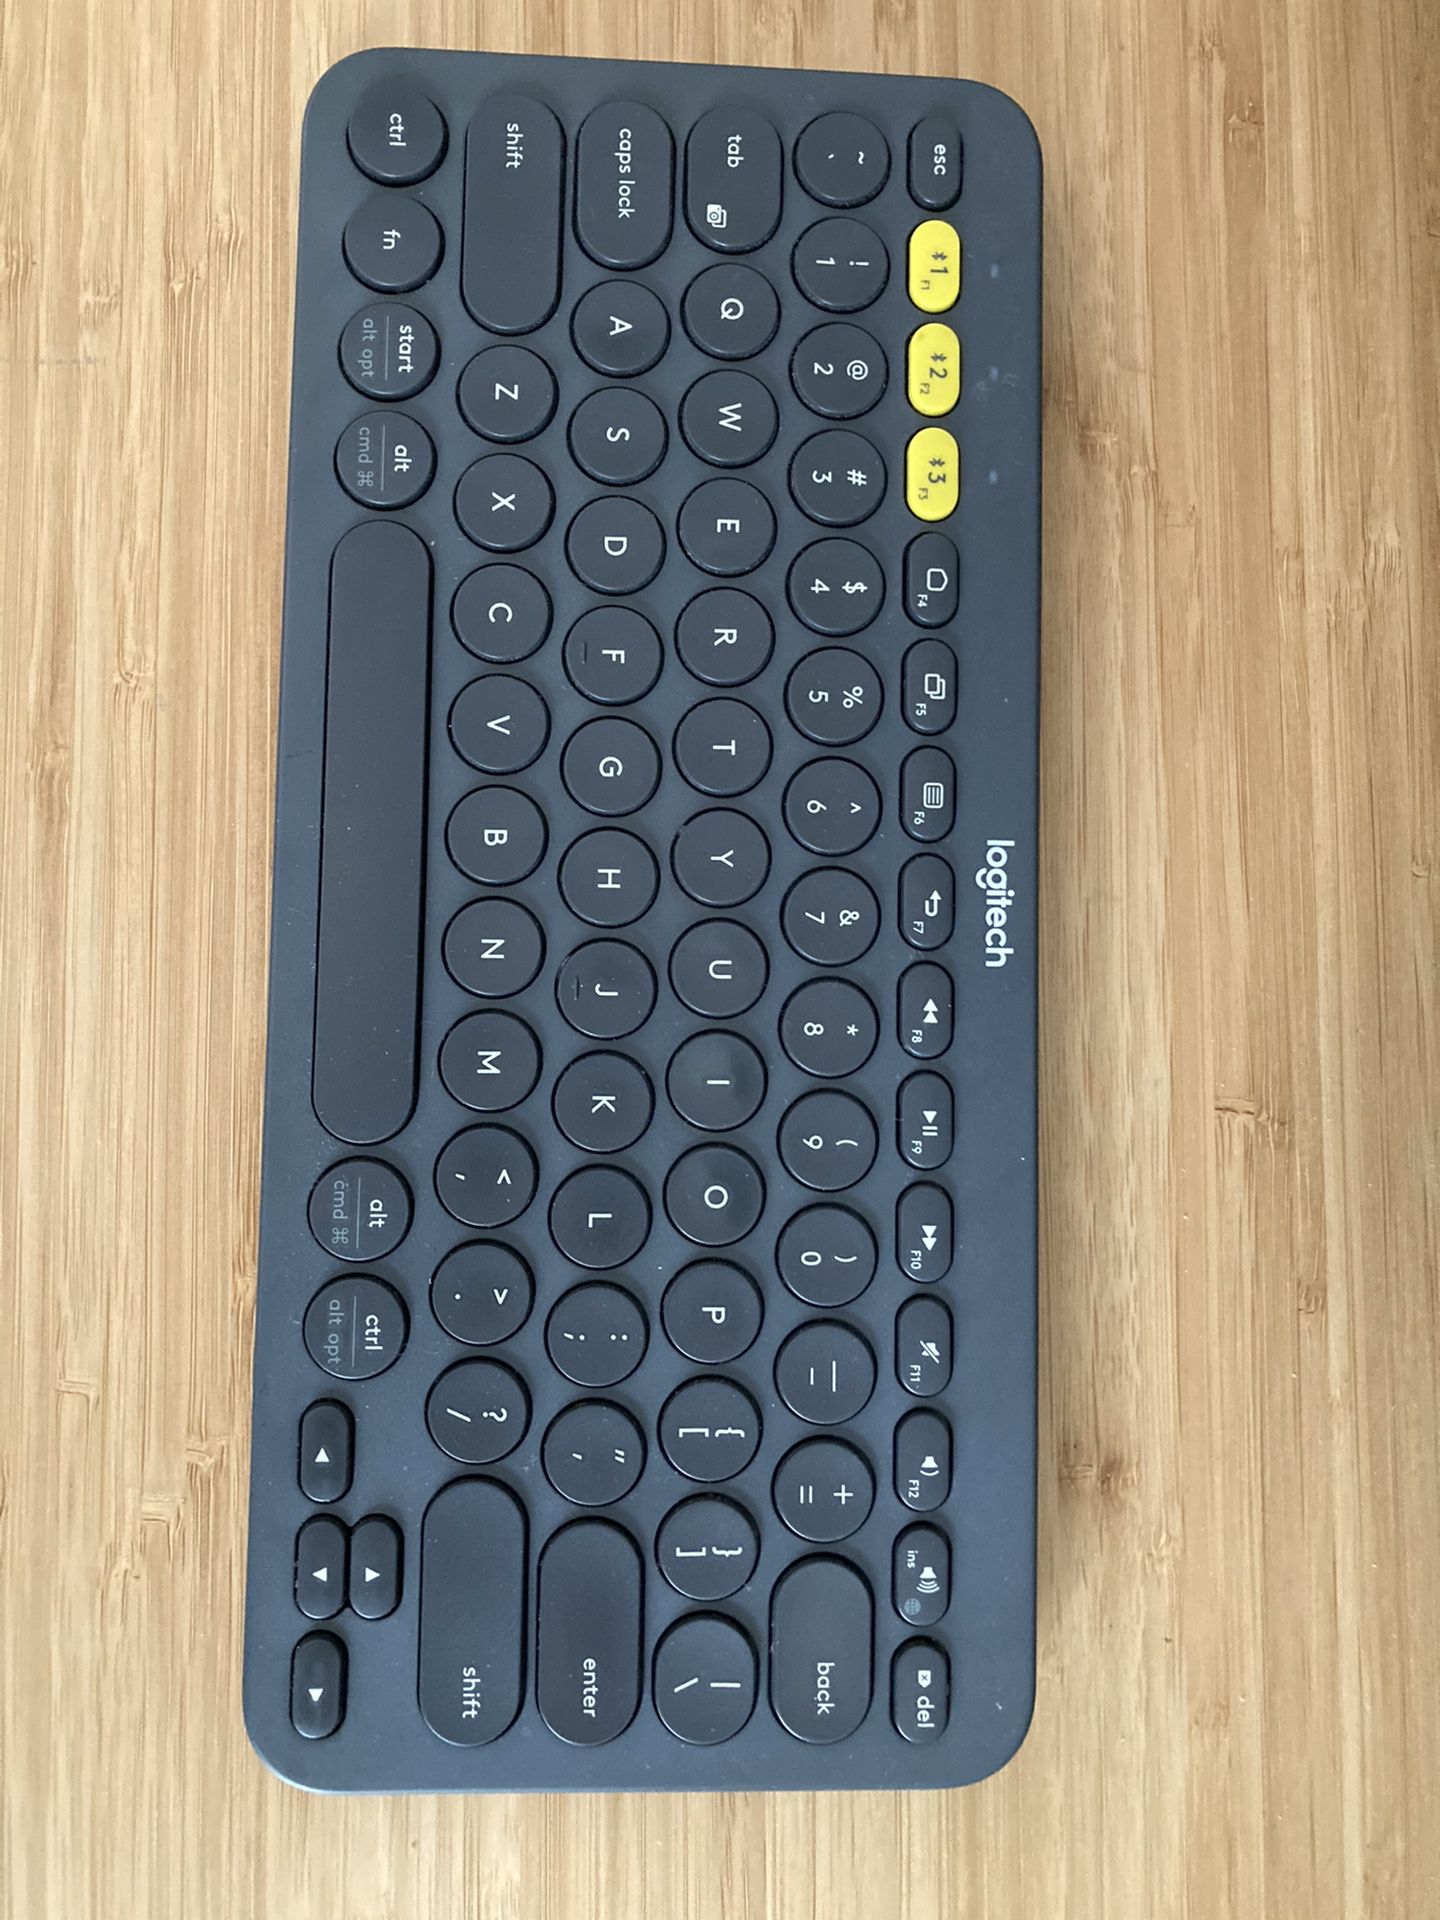 Logitech K380 BTW keyboard with case